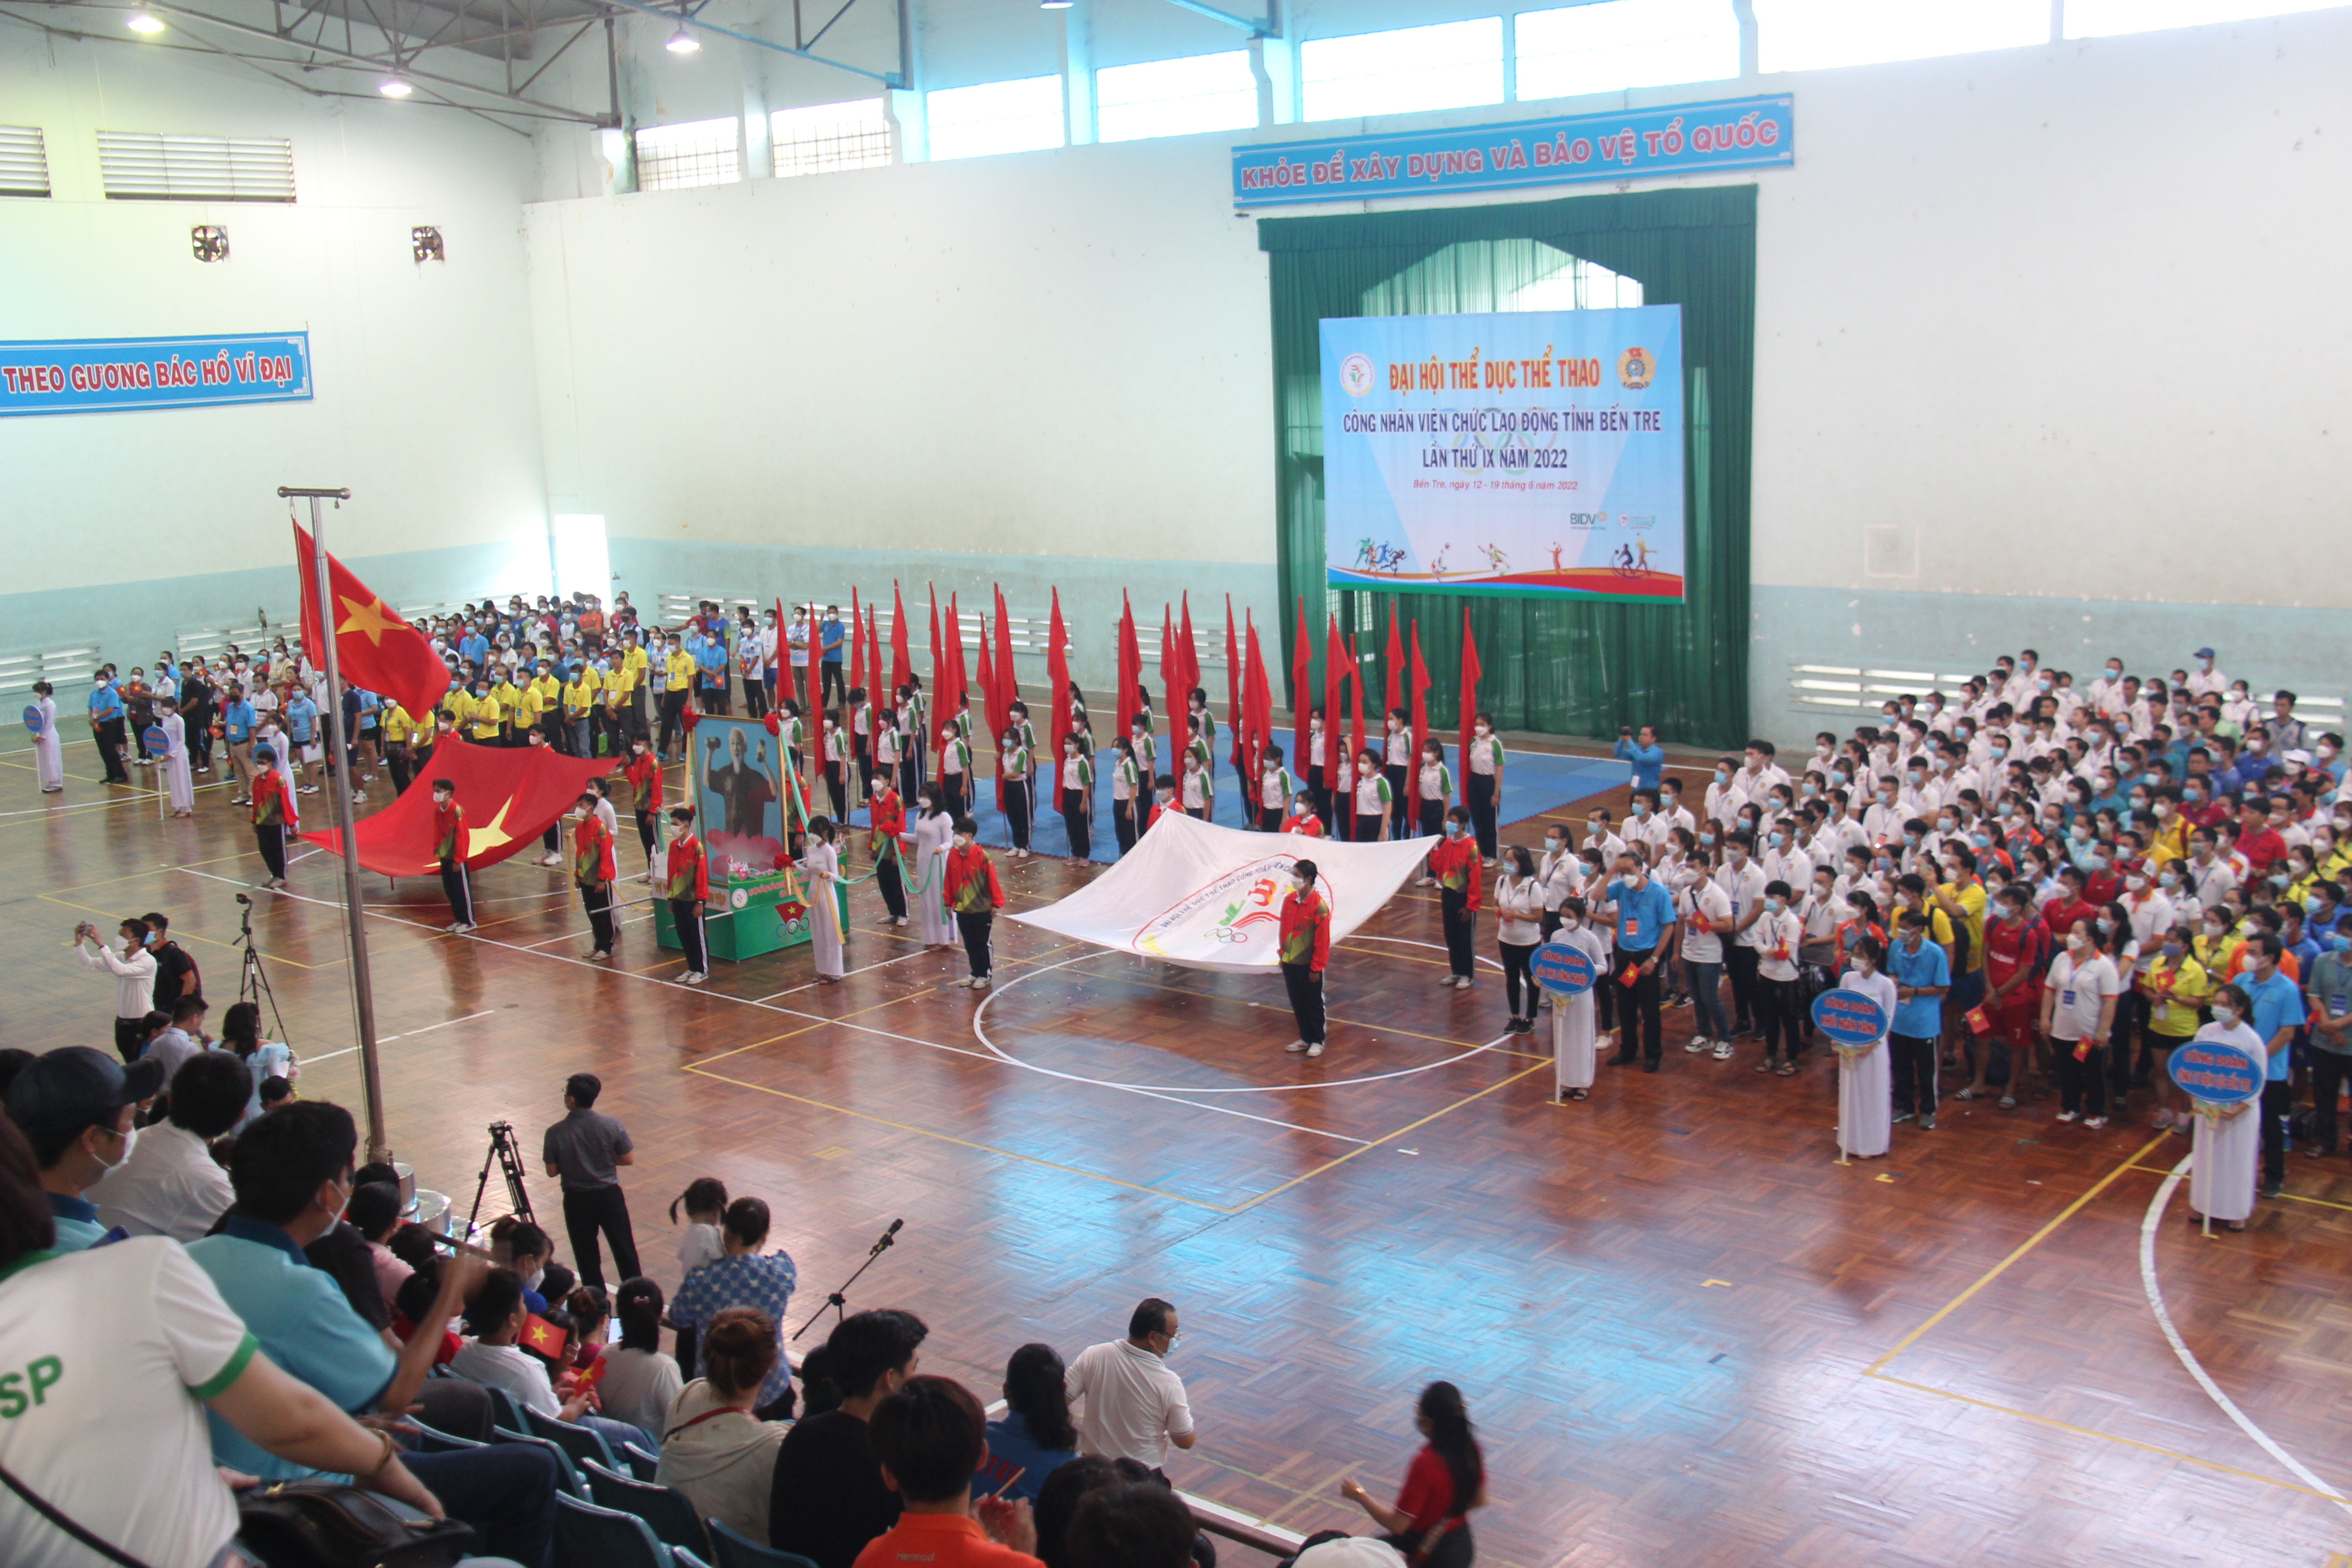 Quang cảnh buổi khai mạc Đại hội TDTT công nhân viên chức lao động tỉnh Bến Tre